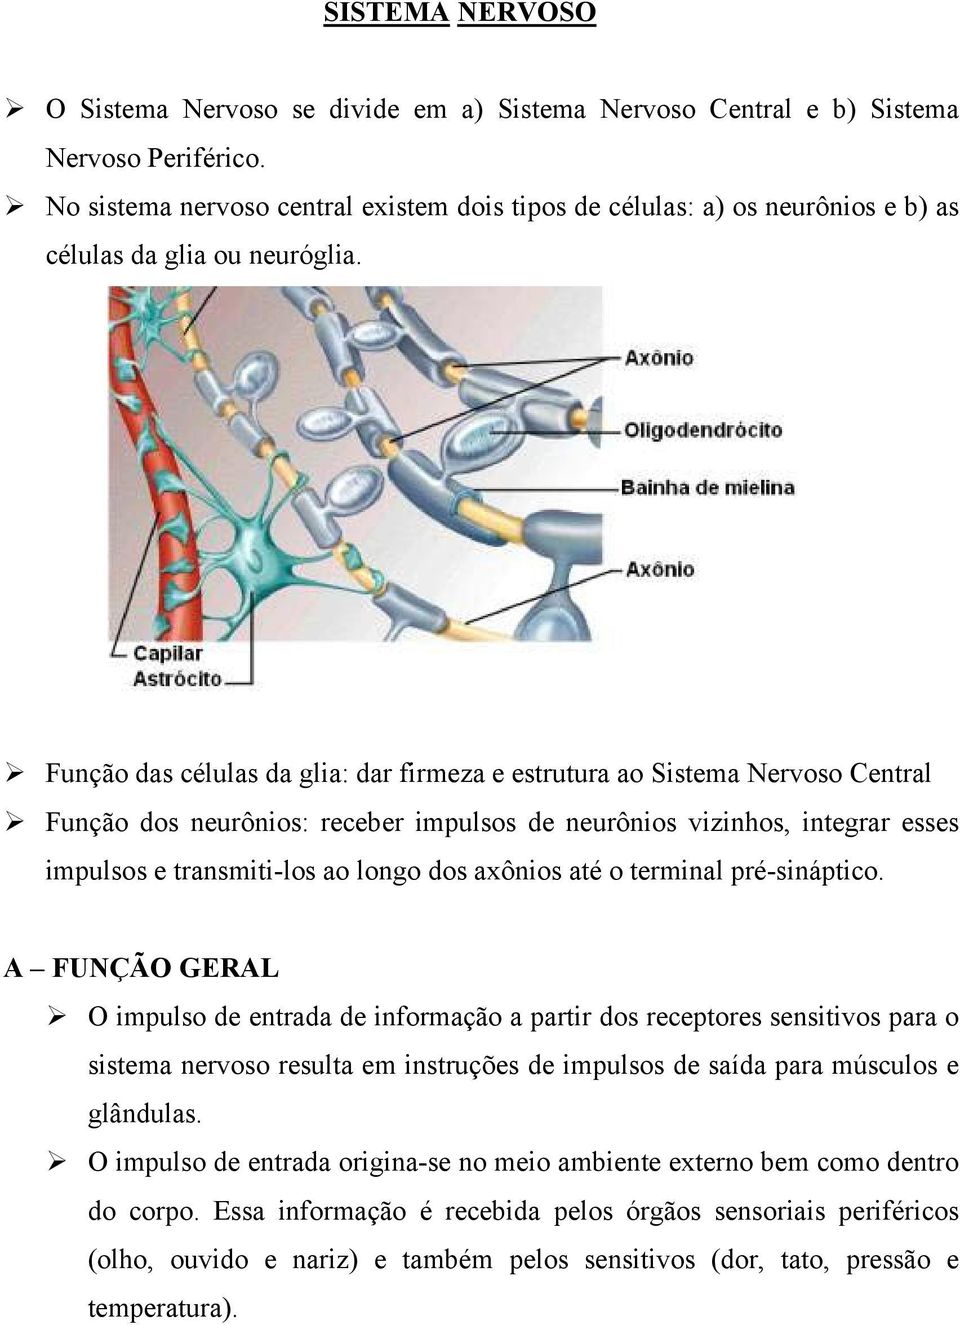 Função das células da glia: dar firmeza e estrutura ao Sistema Nervoso Central Função dos neurônios: receber impulsos de neurônios vizinhos, integrar esses impulsos e transmiti-los ao longo dos